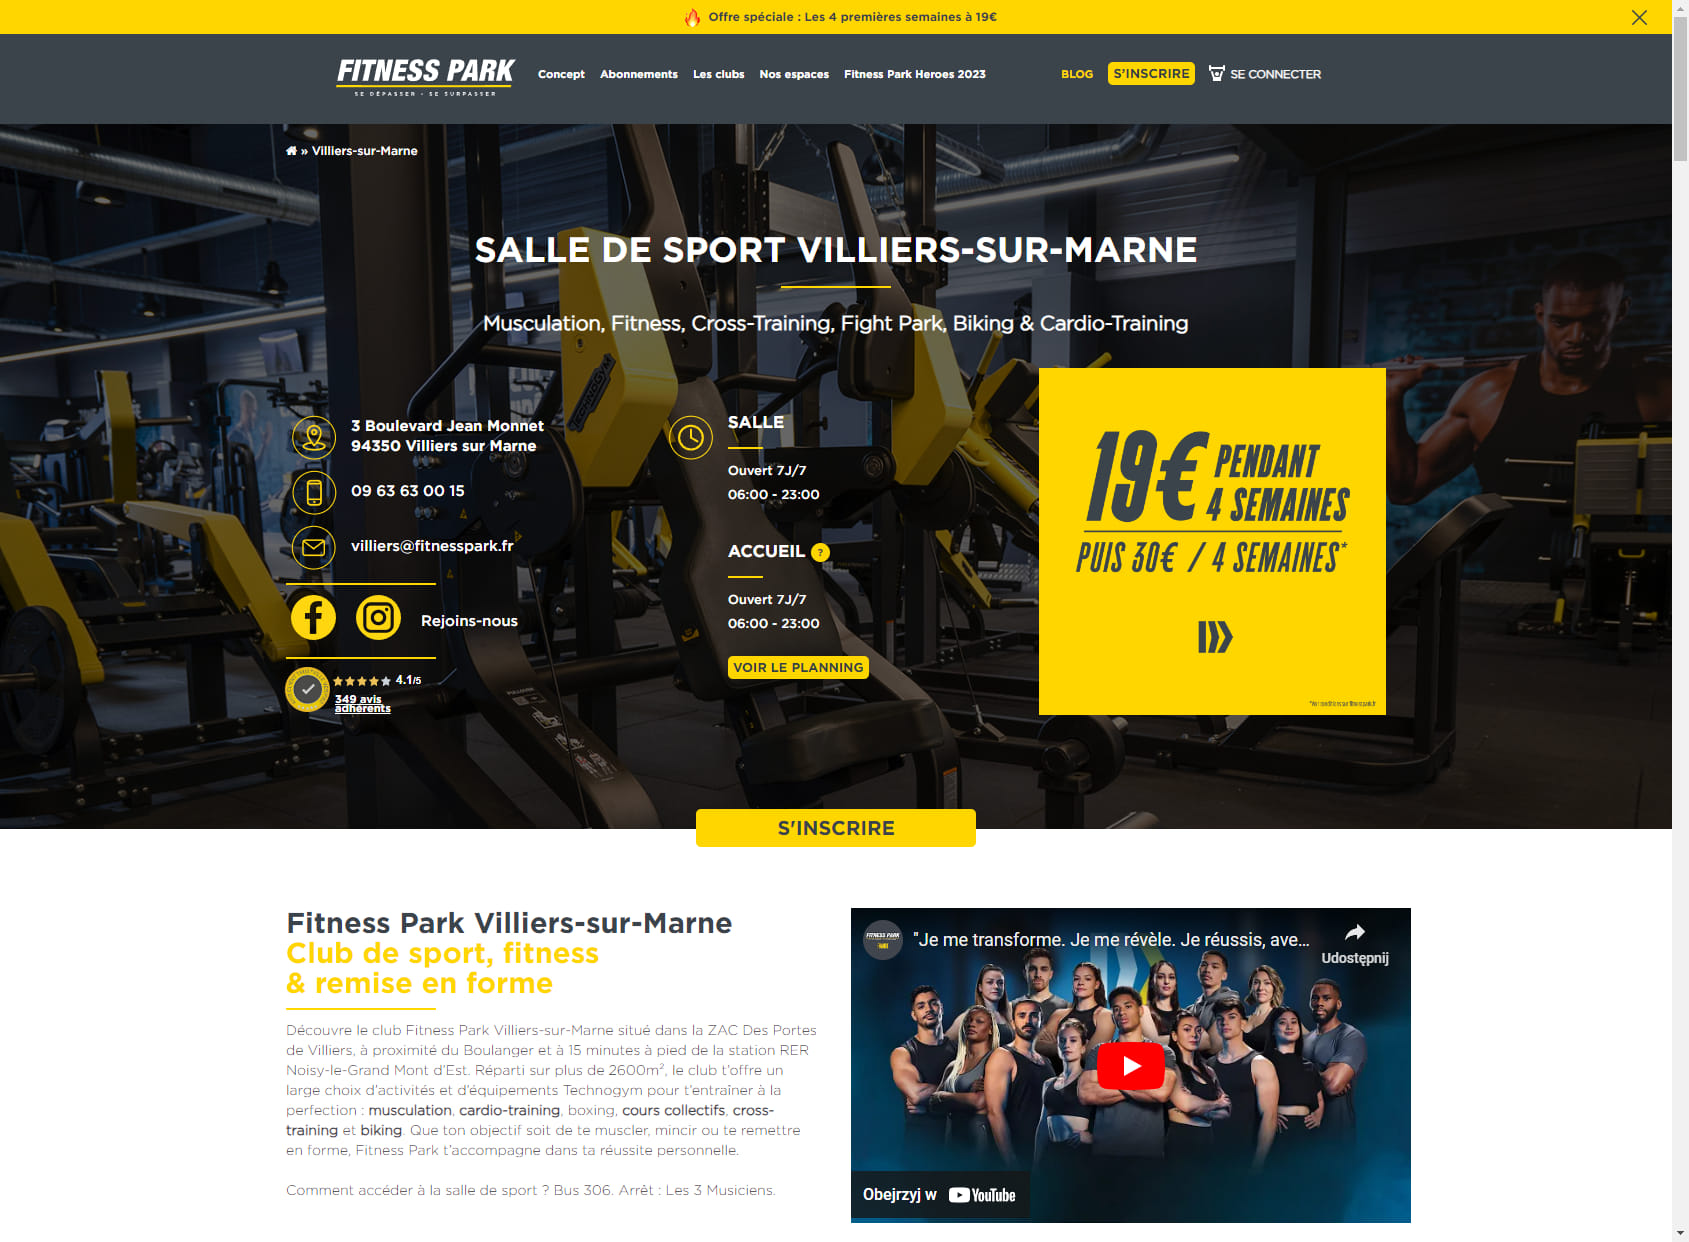 Salle de sport Villiers-sur-Marne - Fitness Park